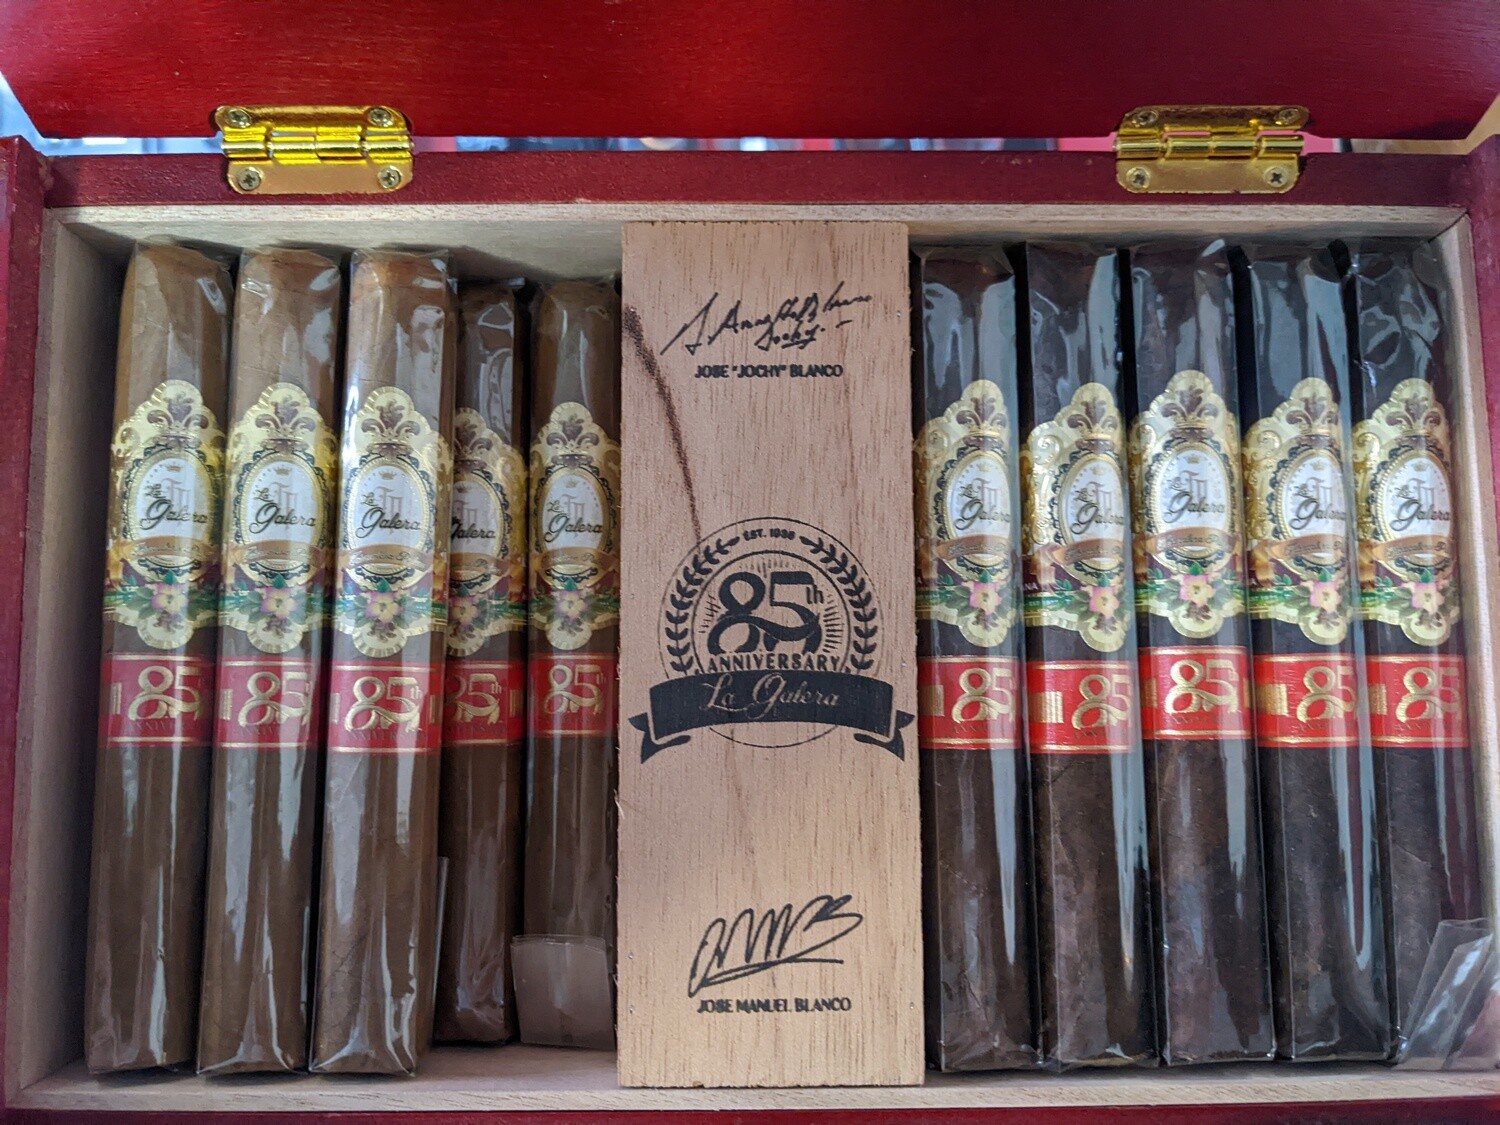 La Galera 85th Anniversary Broadleaf Toro 6 x 52 Single Cigar